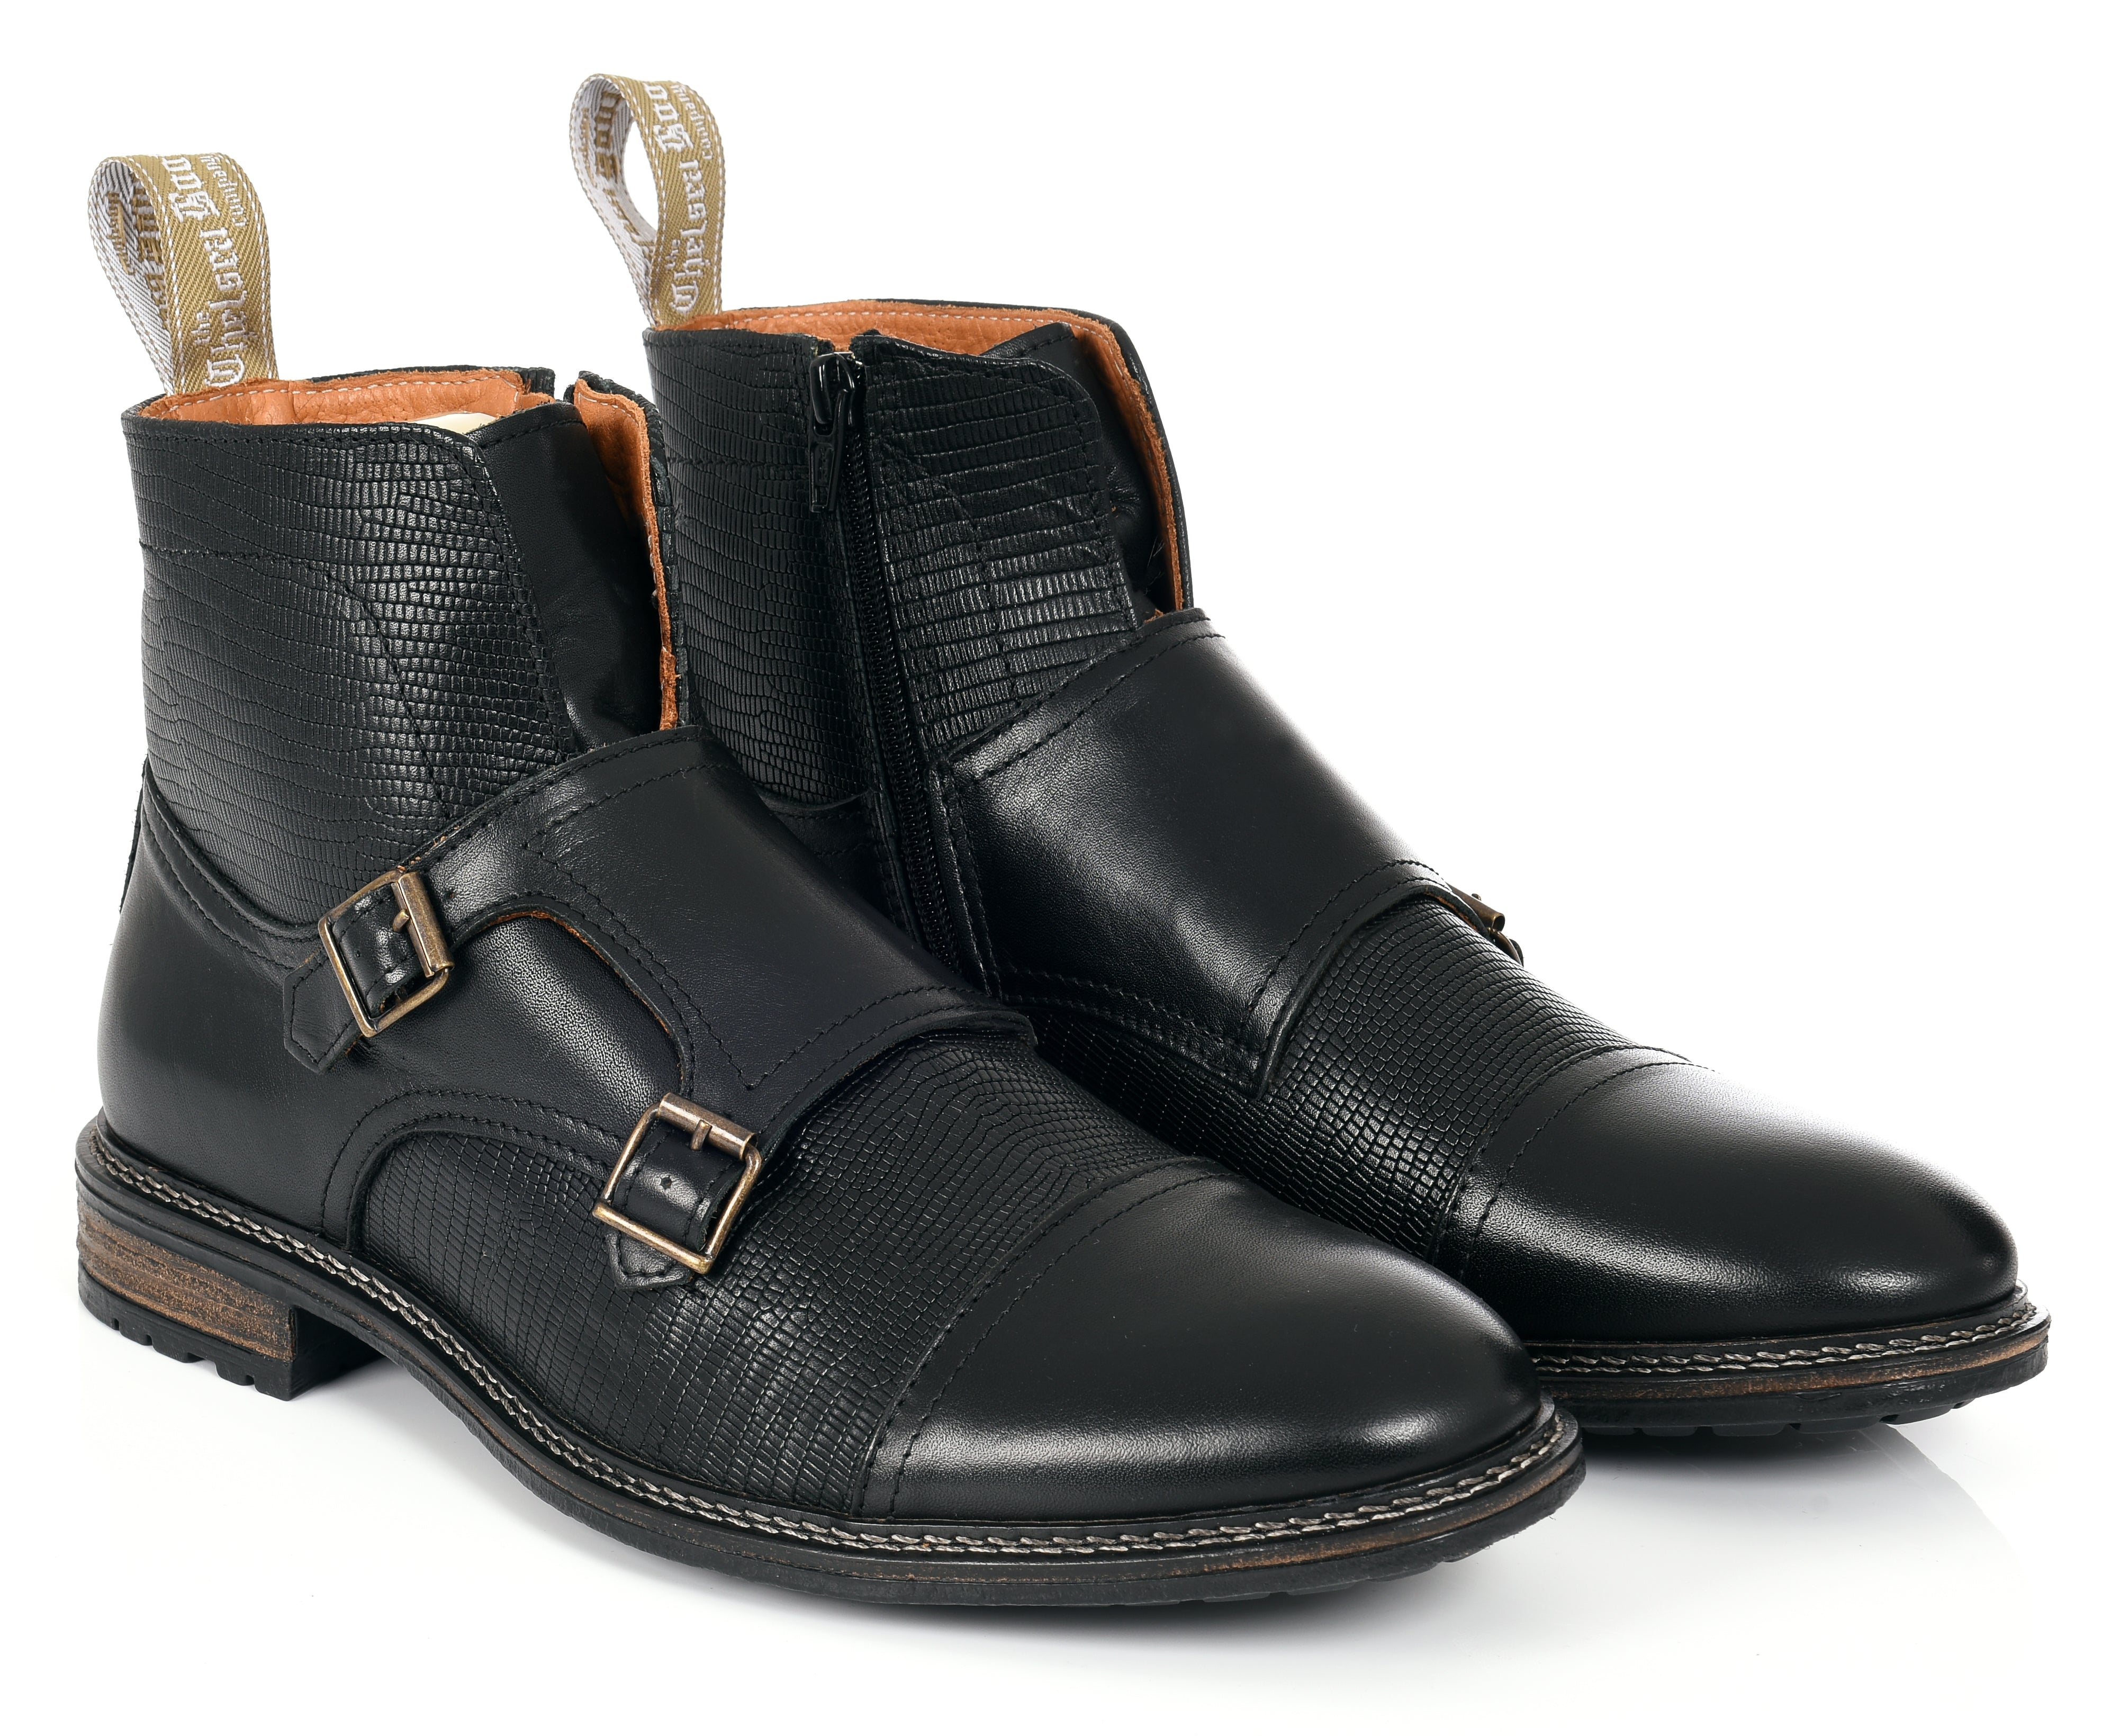 Men’s Double Buckle - Black 13 Uk The Chelsea Boot Co Est. 1851